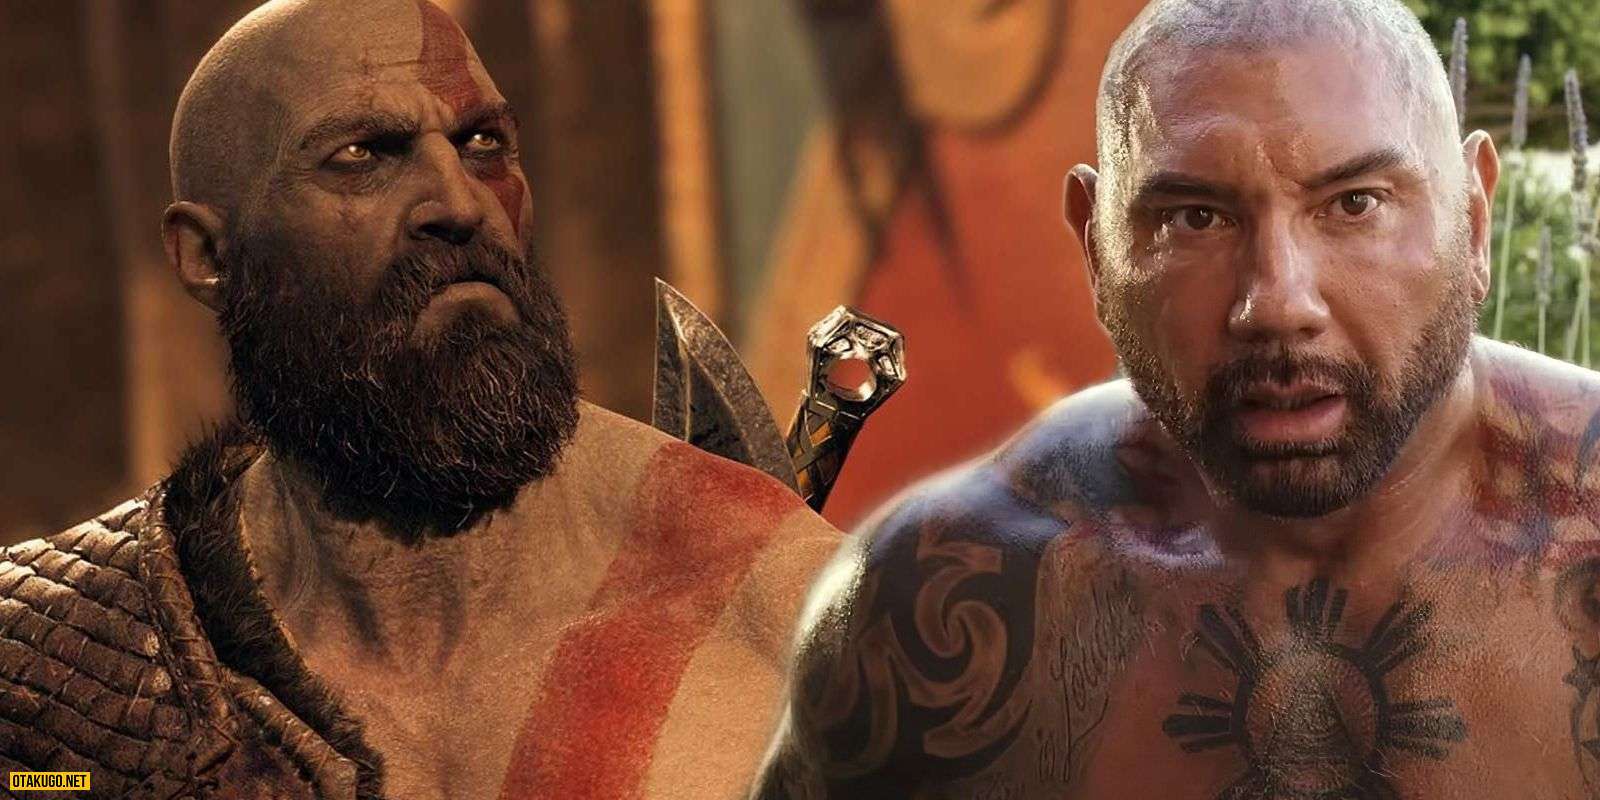 Nam dien vien Kratos khong dong y voi Dave Bautista